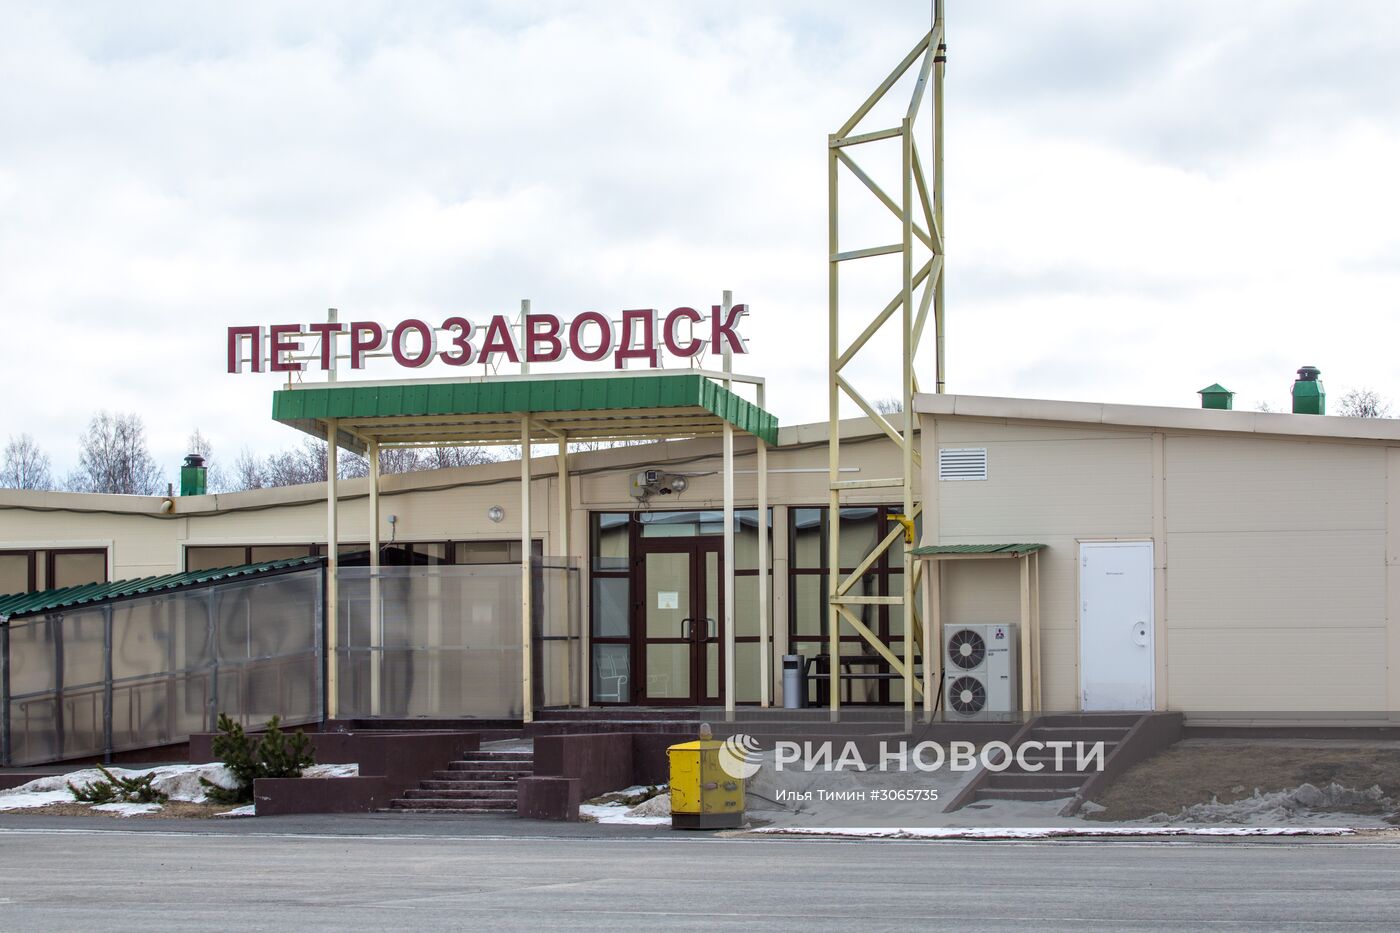 Аэропорт "Петрозаводск"